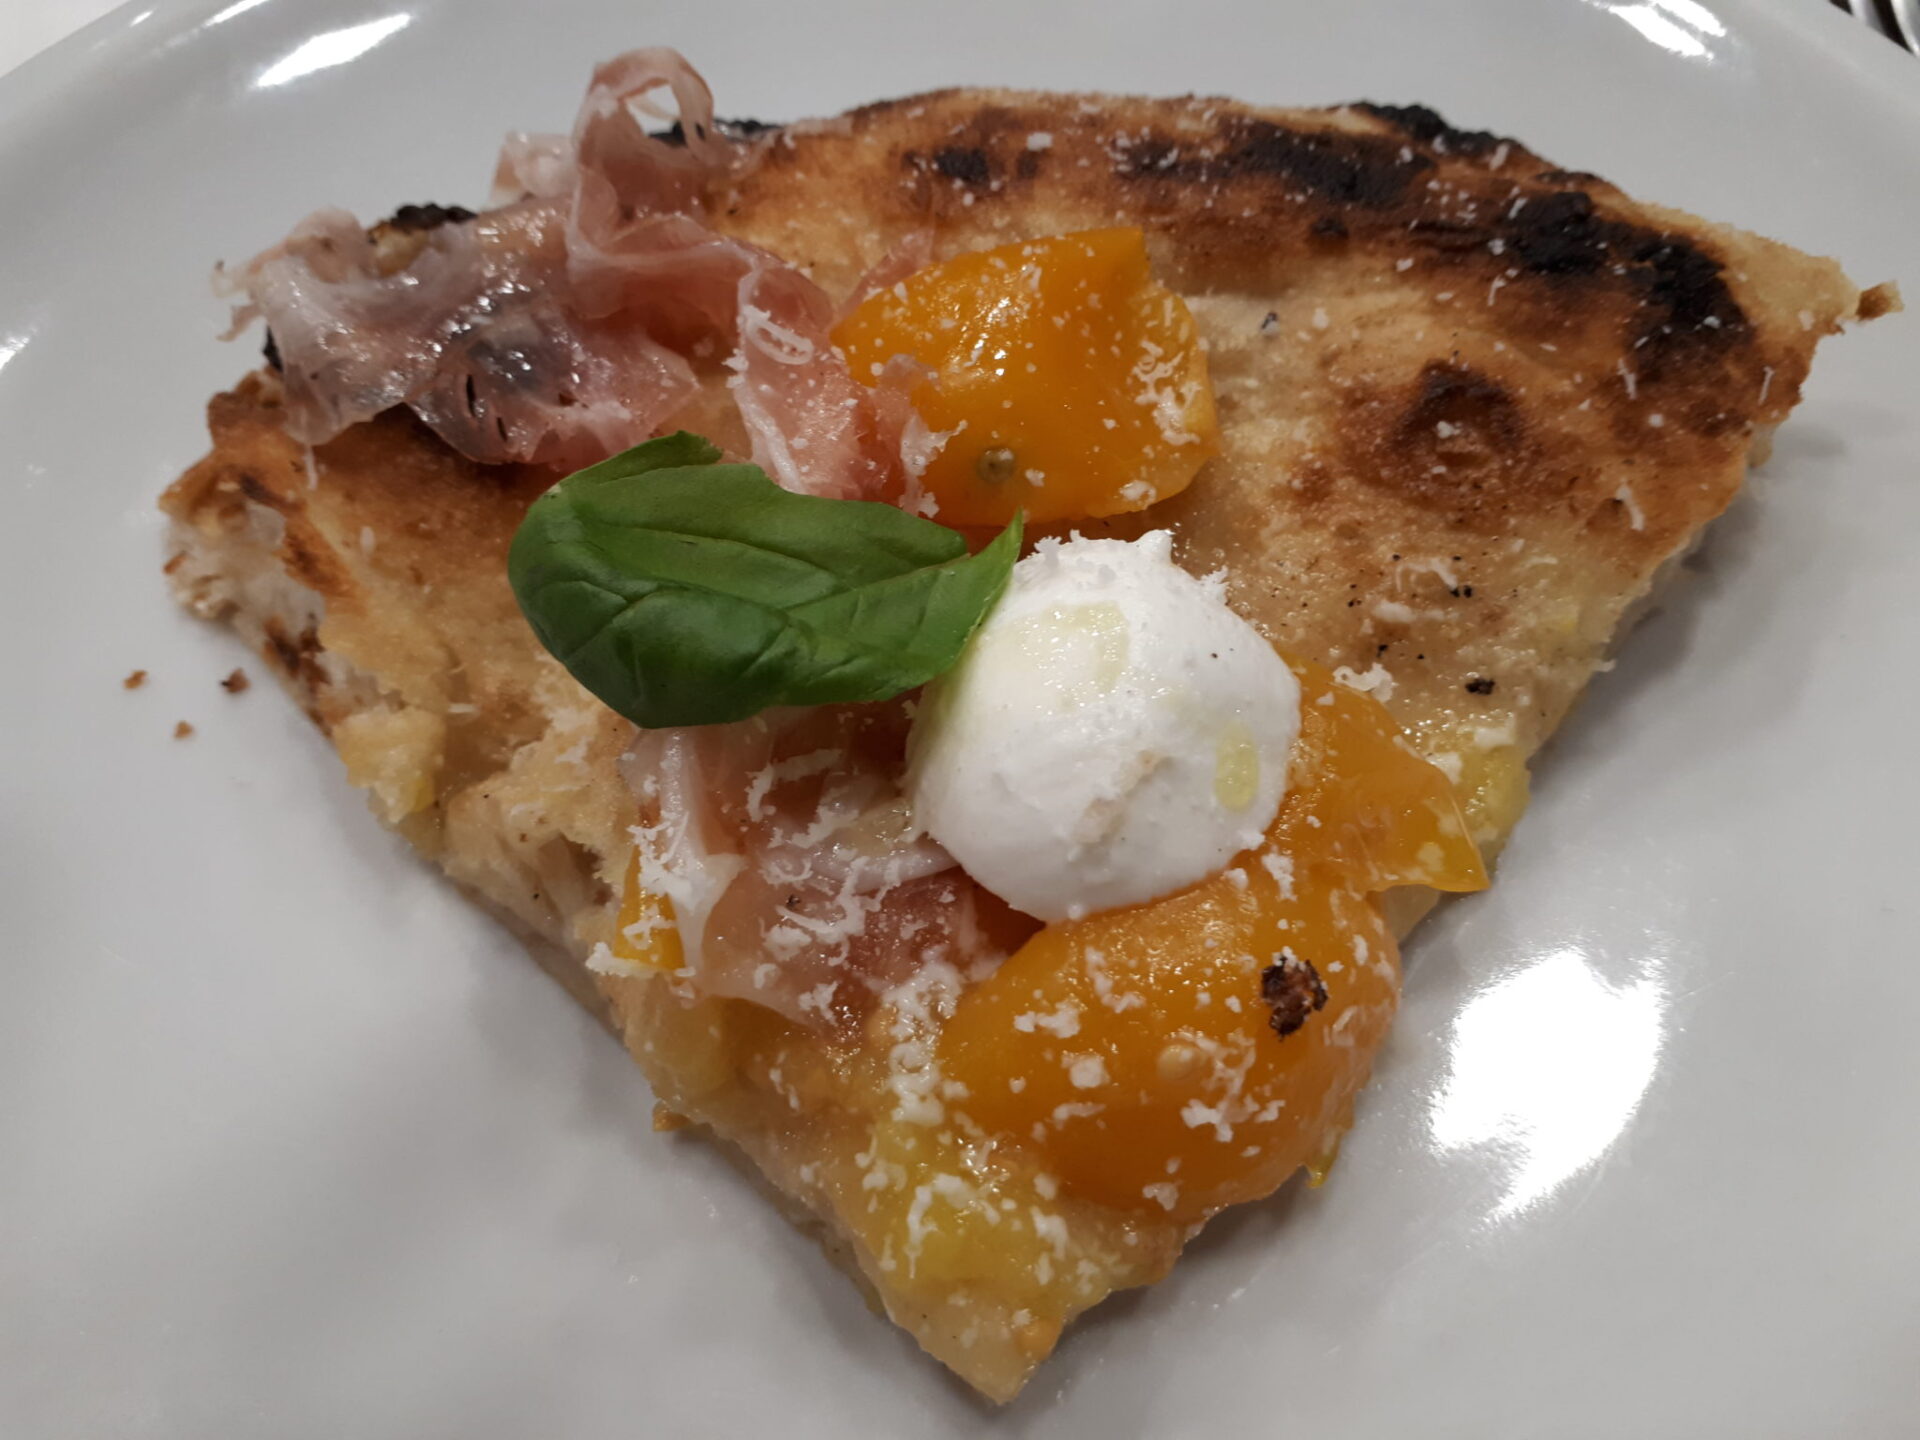 Degustì taglia il  traguardo della 6° tappa alla pizzeria Porzio - Sapori News 